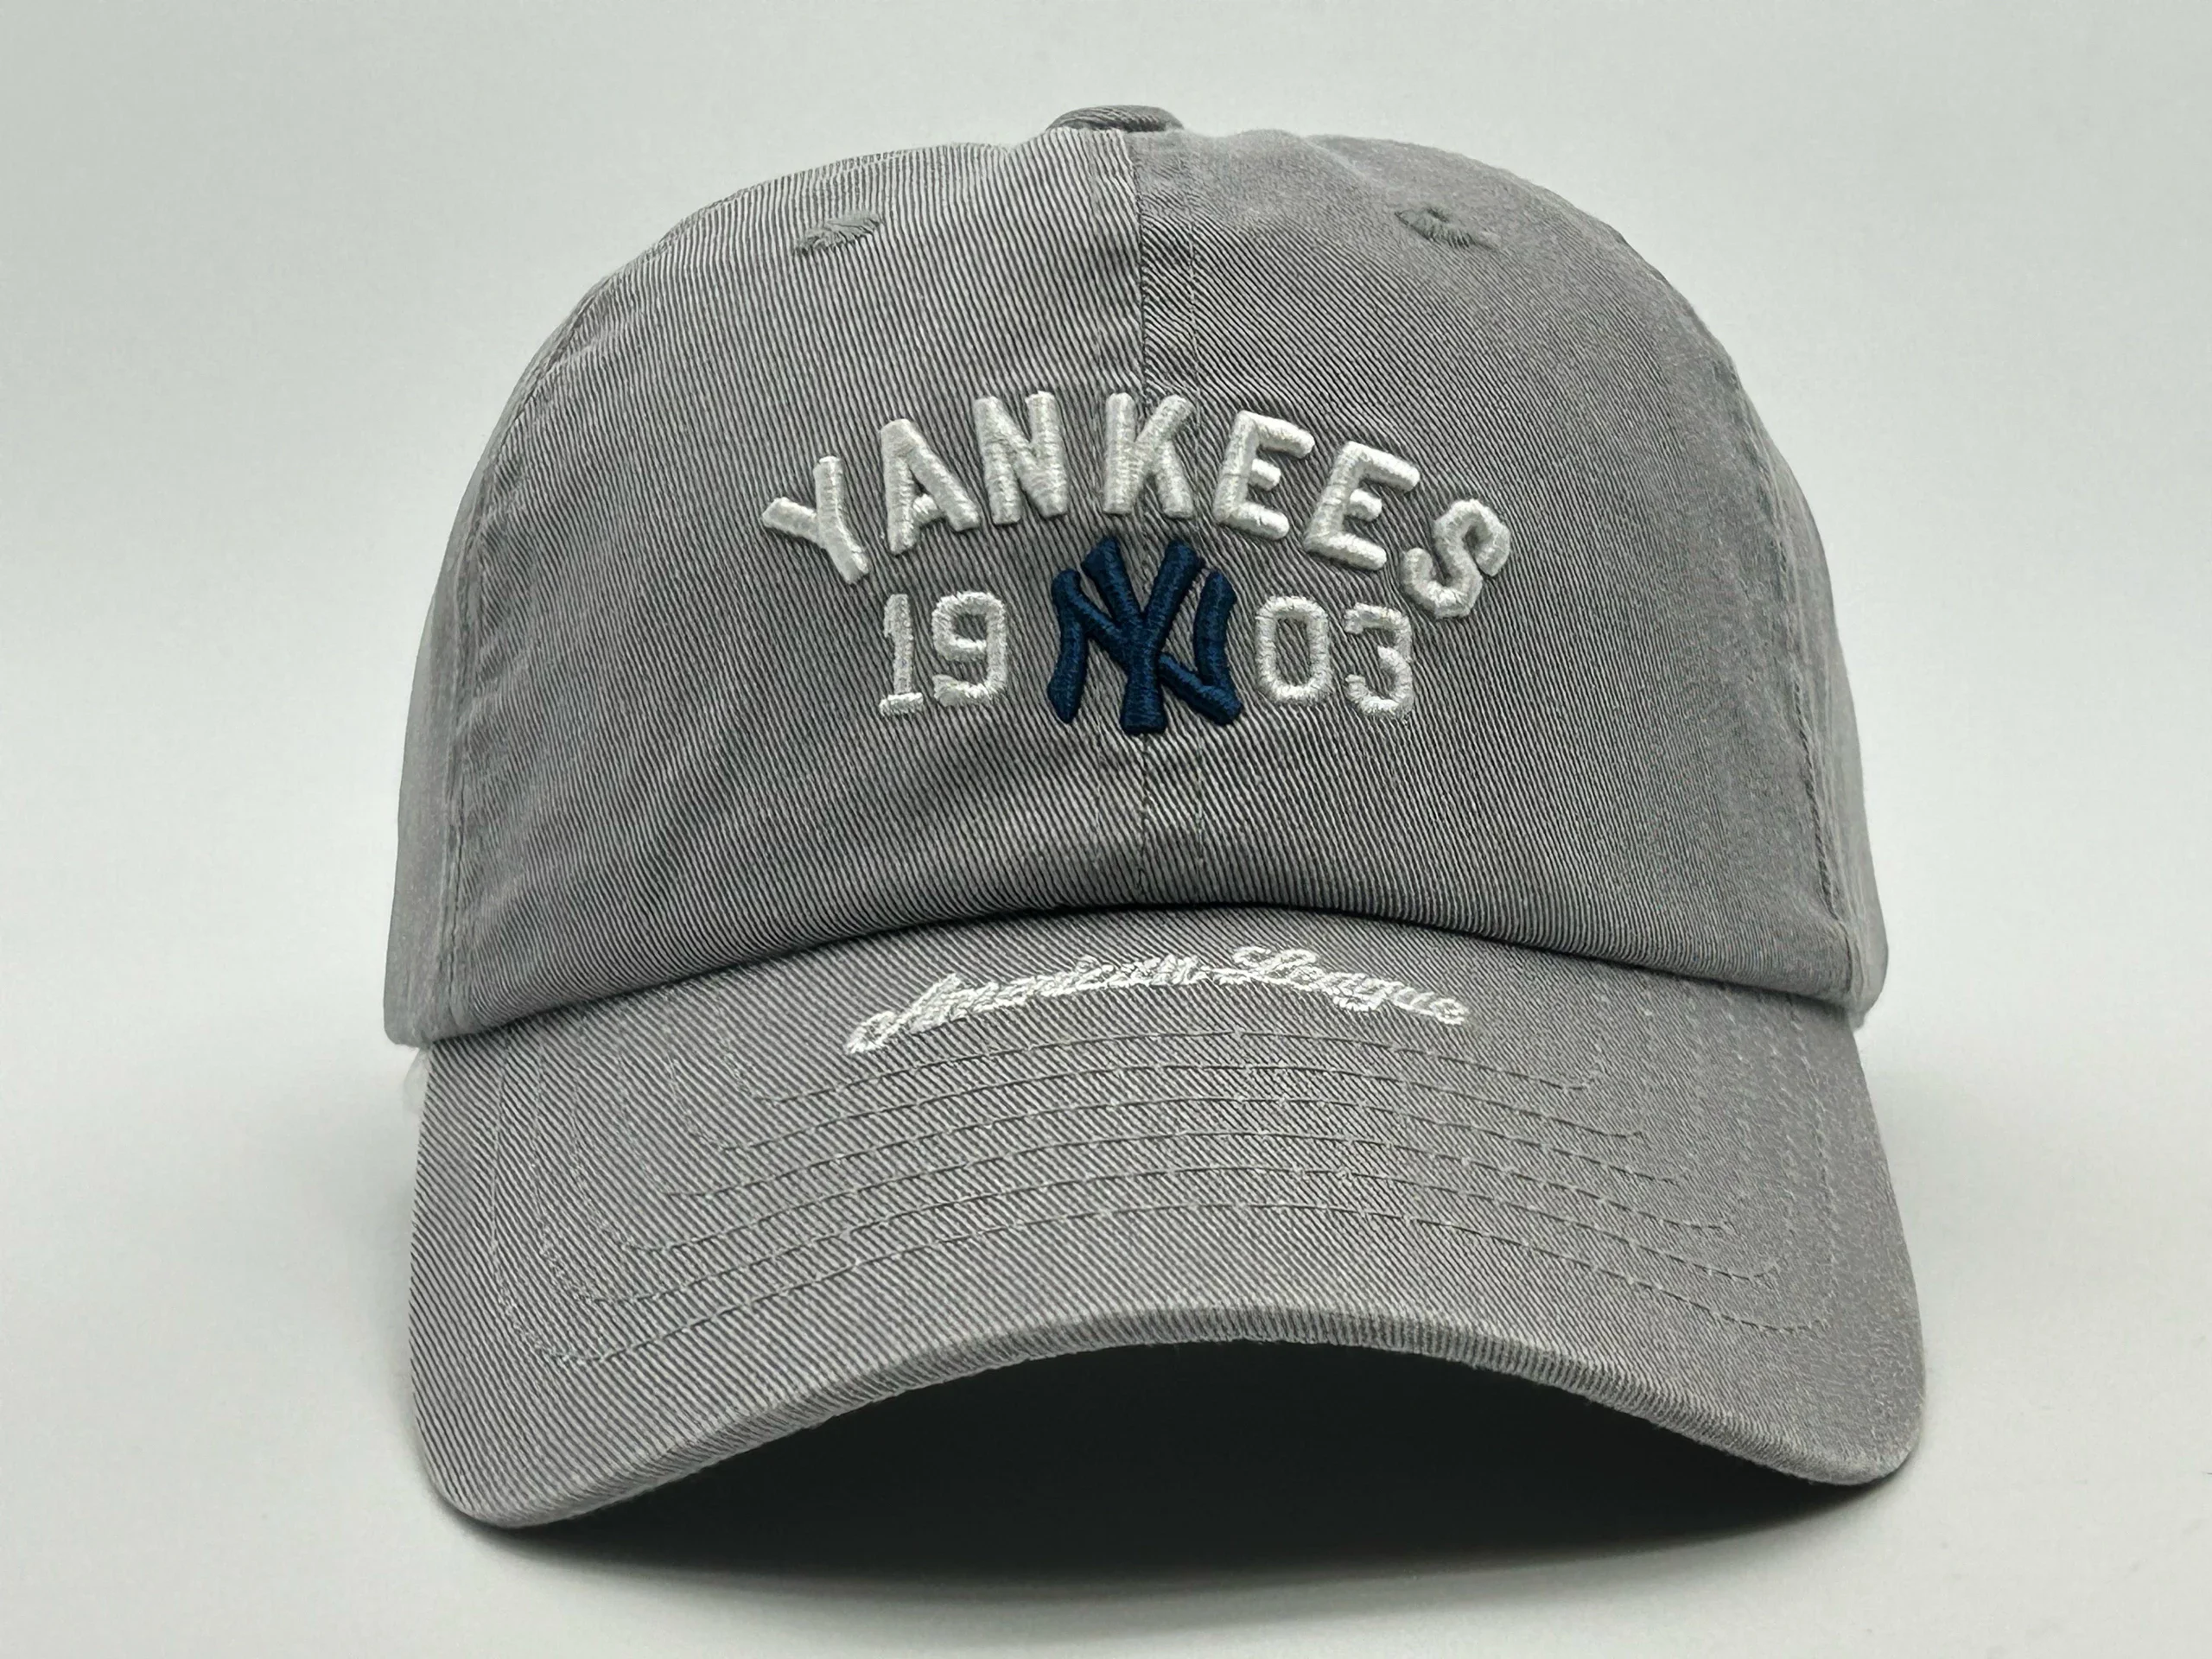 孤品正版MLB帽子春秋新款NY棒球帽潮流时尚YANKEES1903精美刺绣鸭舌帽中 